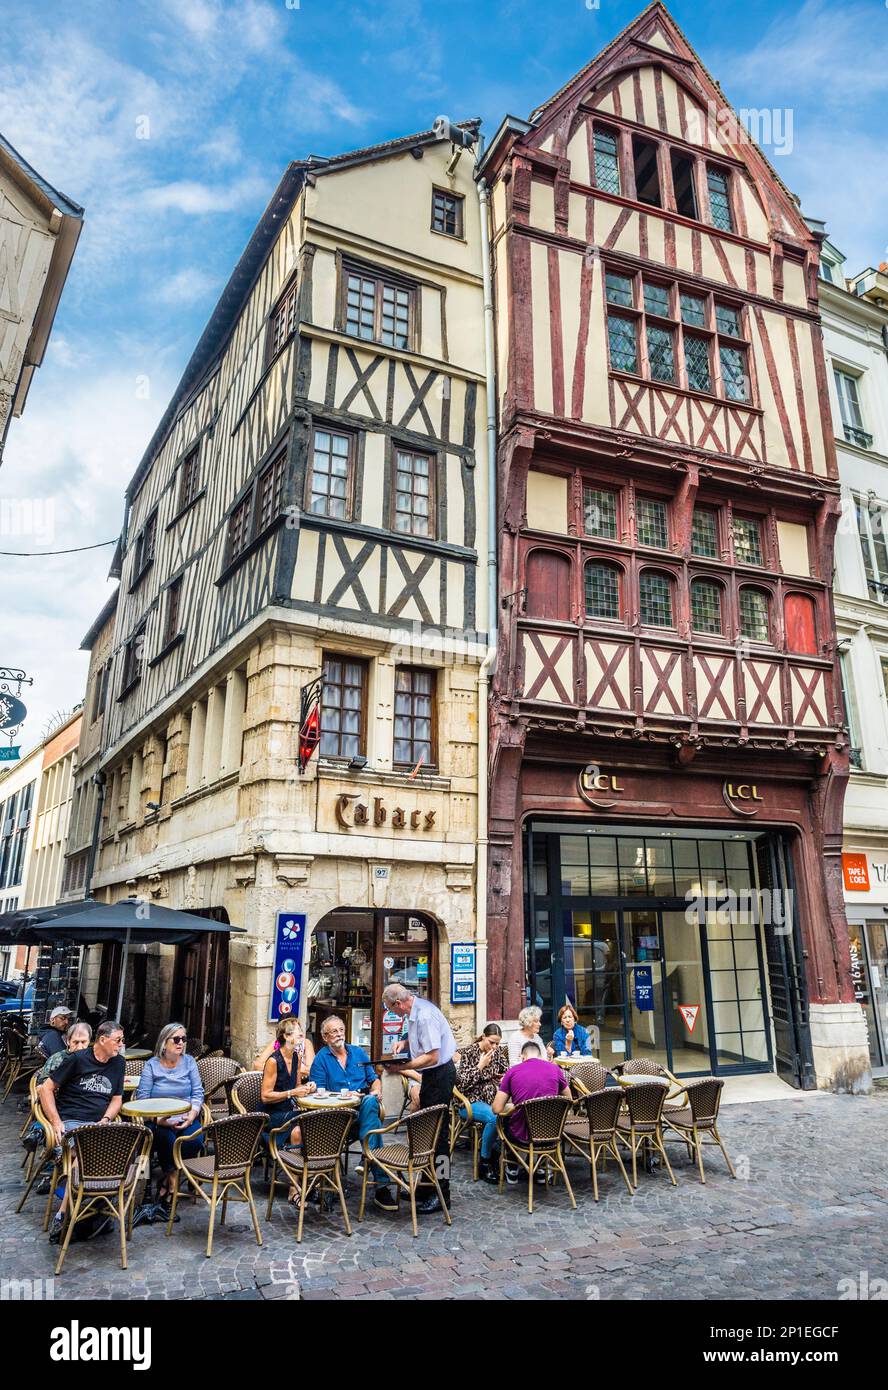 café de rue de la rue du gros-Horloge Rouen, sur fond d'une des maisons médiévales à colombages bien conservées de Rouen, Normandie, France Banque D'Images